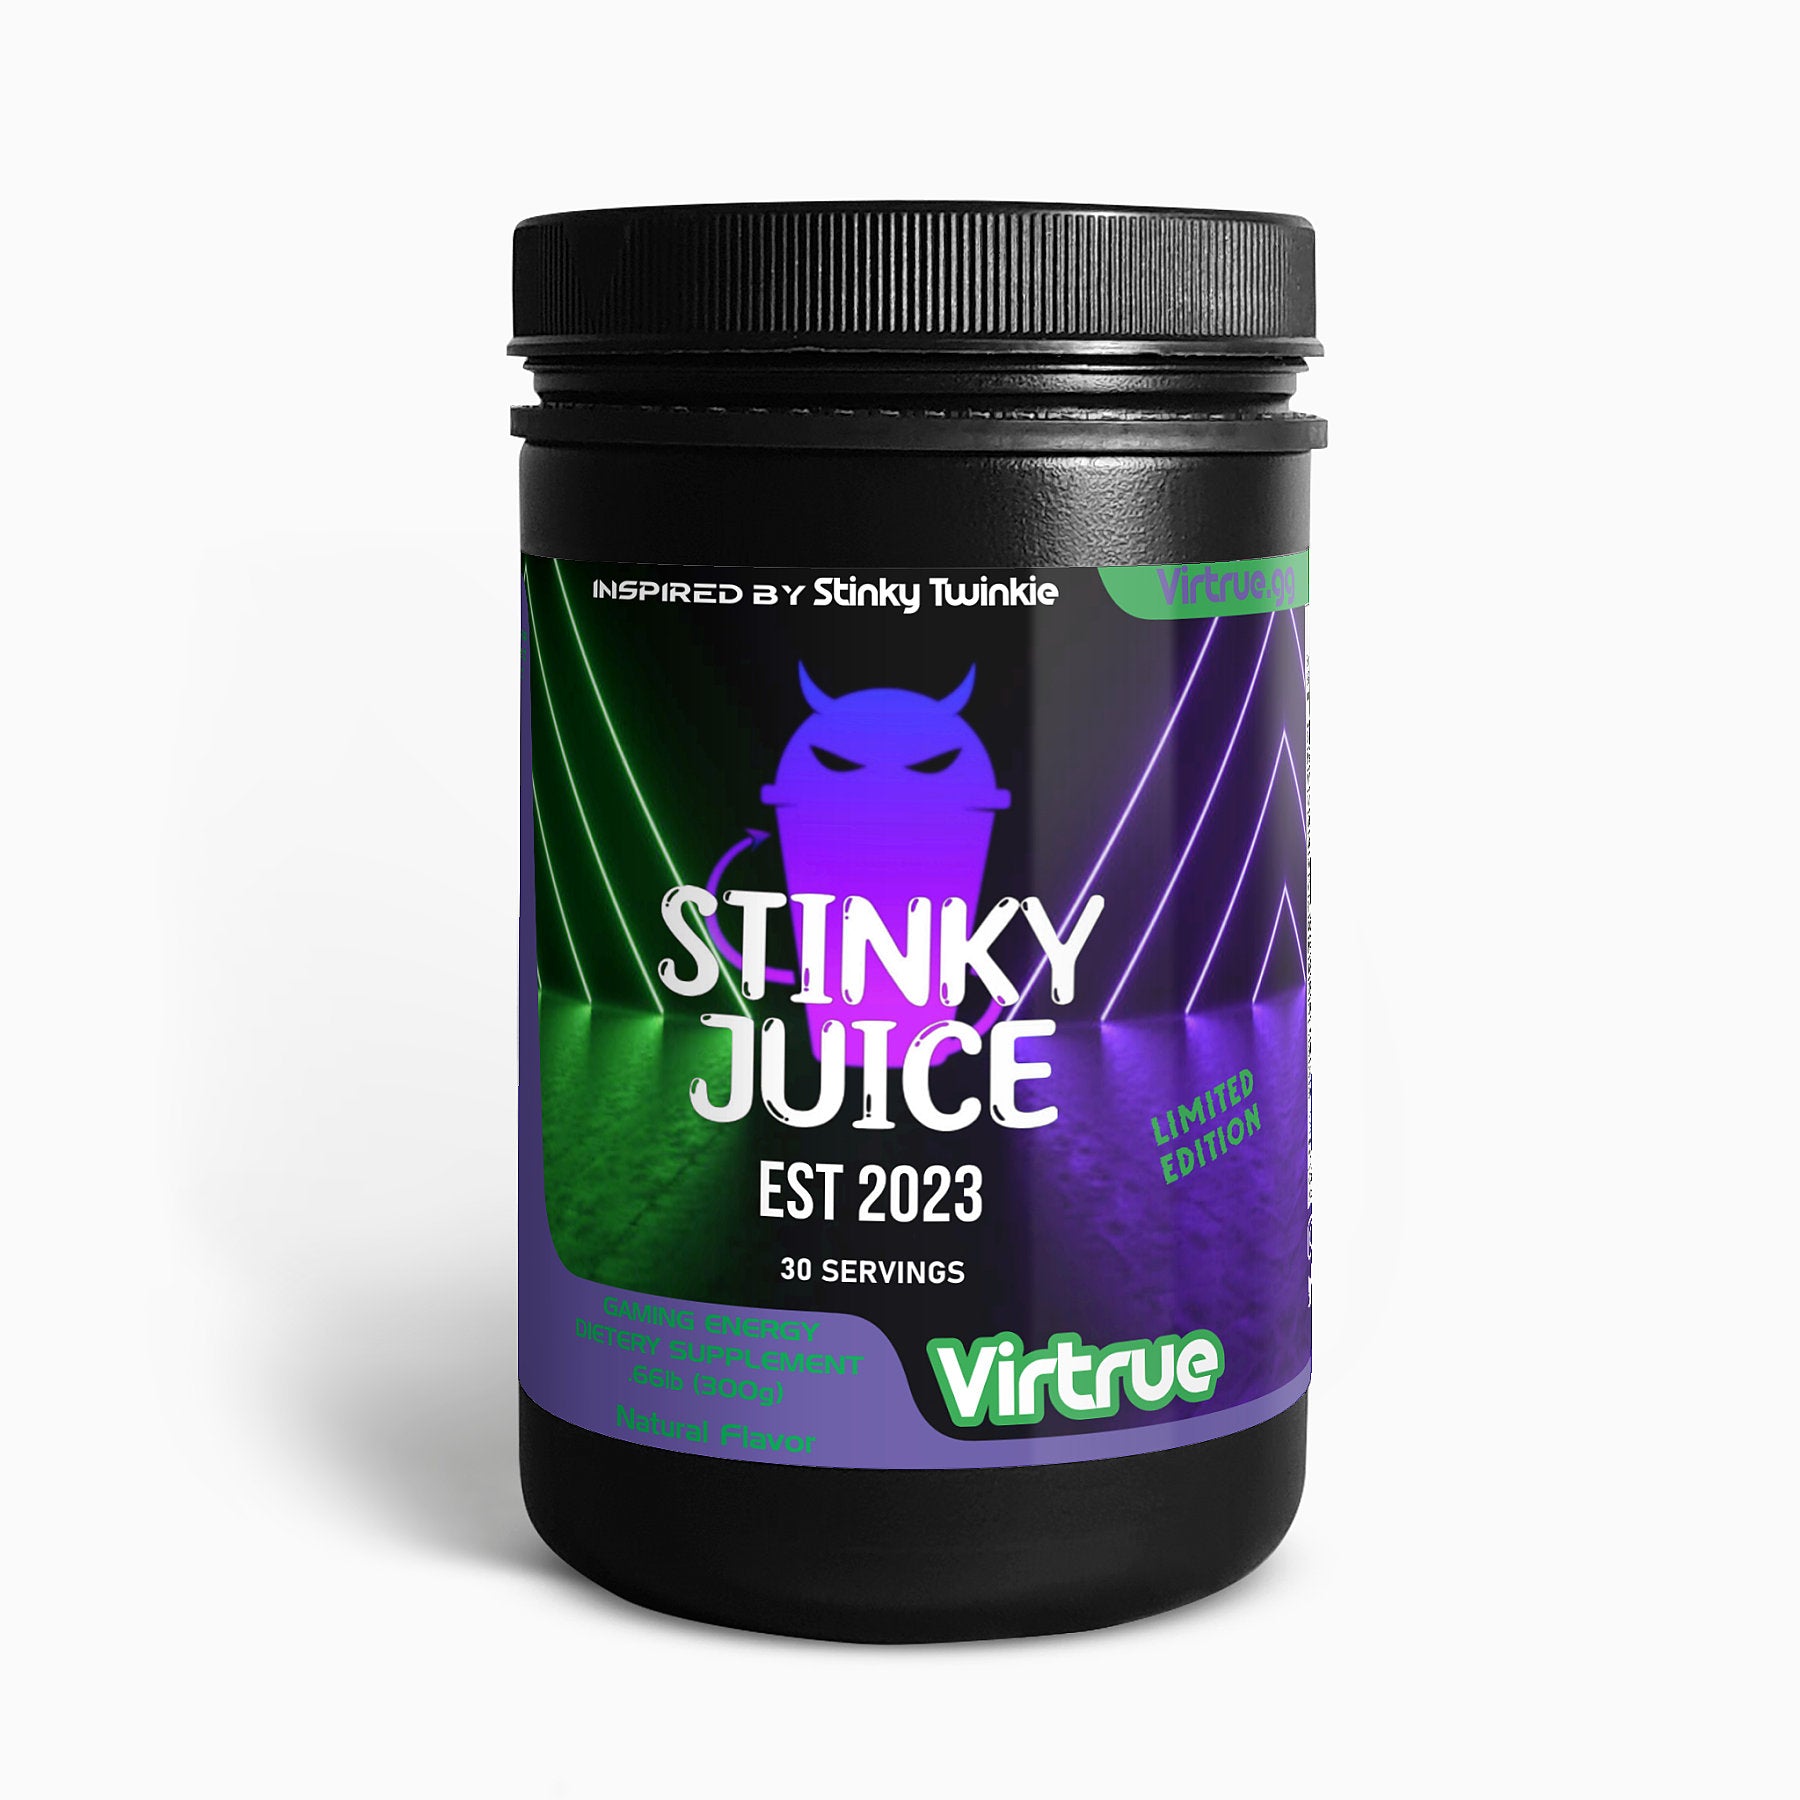 Stinky Juice Energy Formula - Inspired by Stinky Twinkie